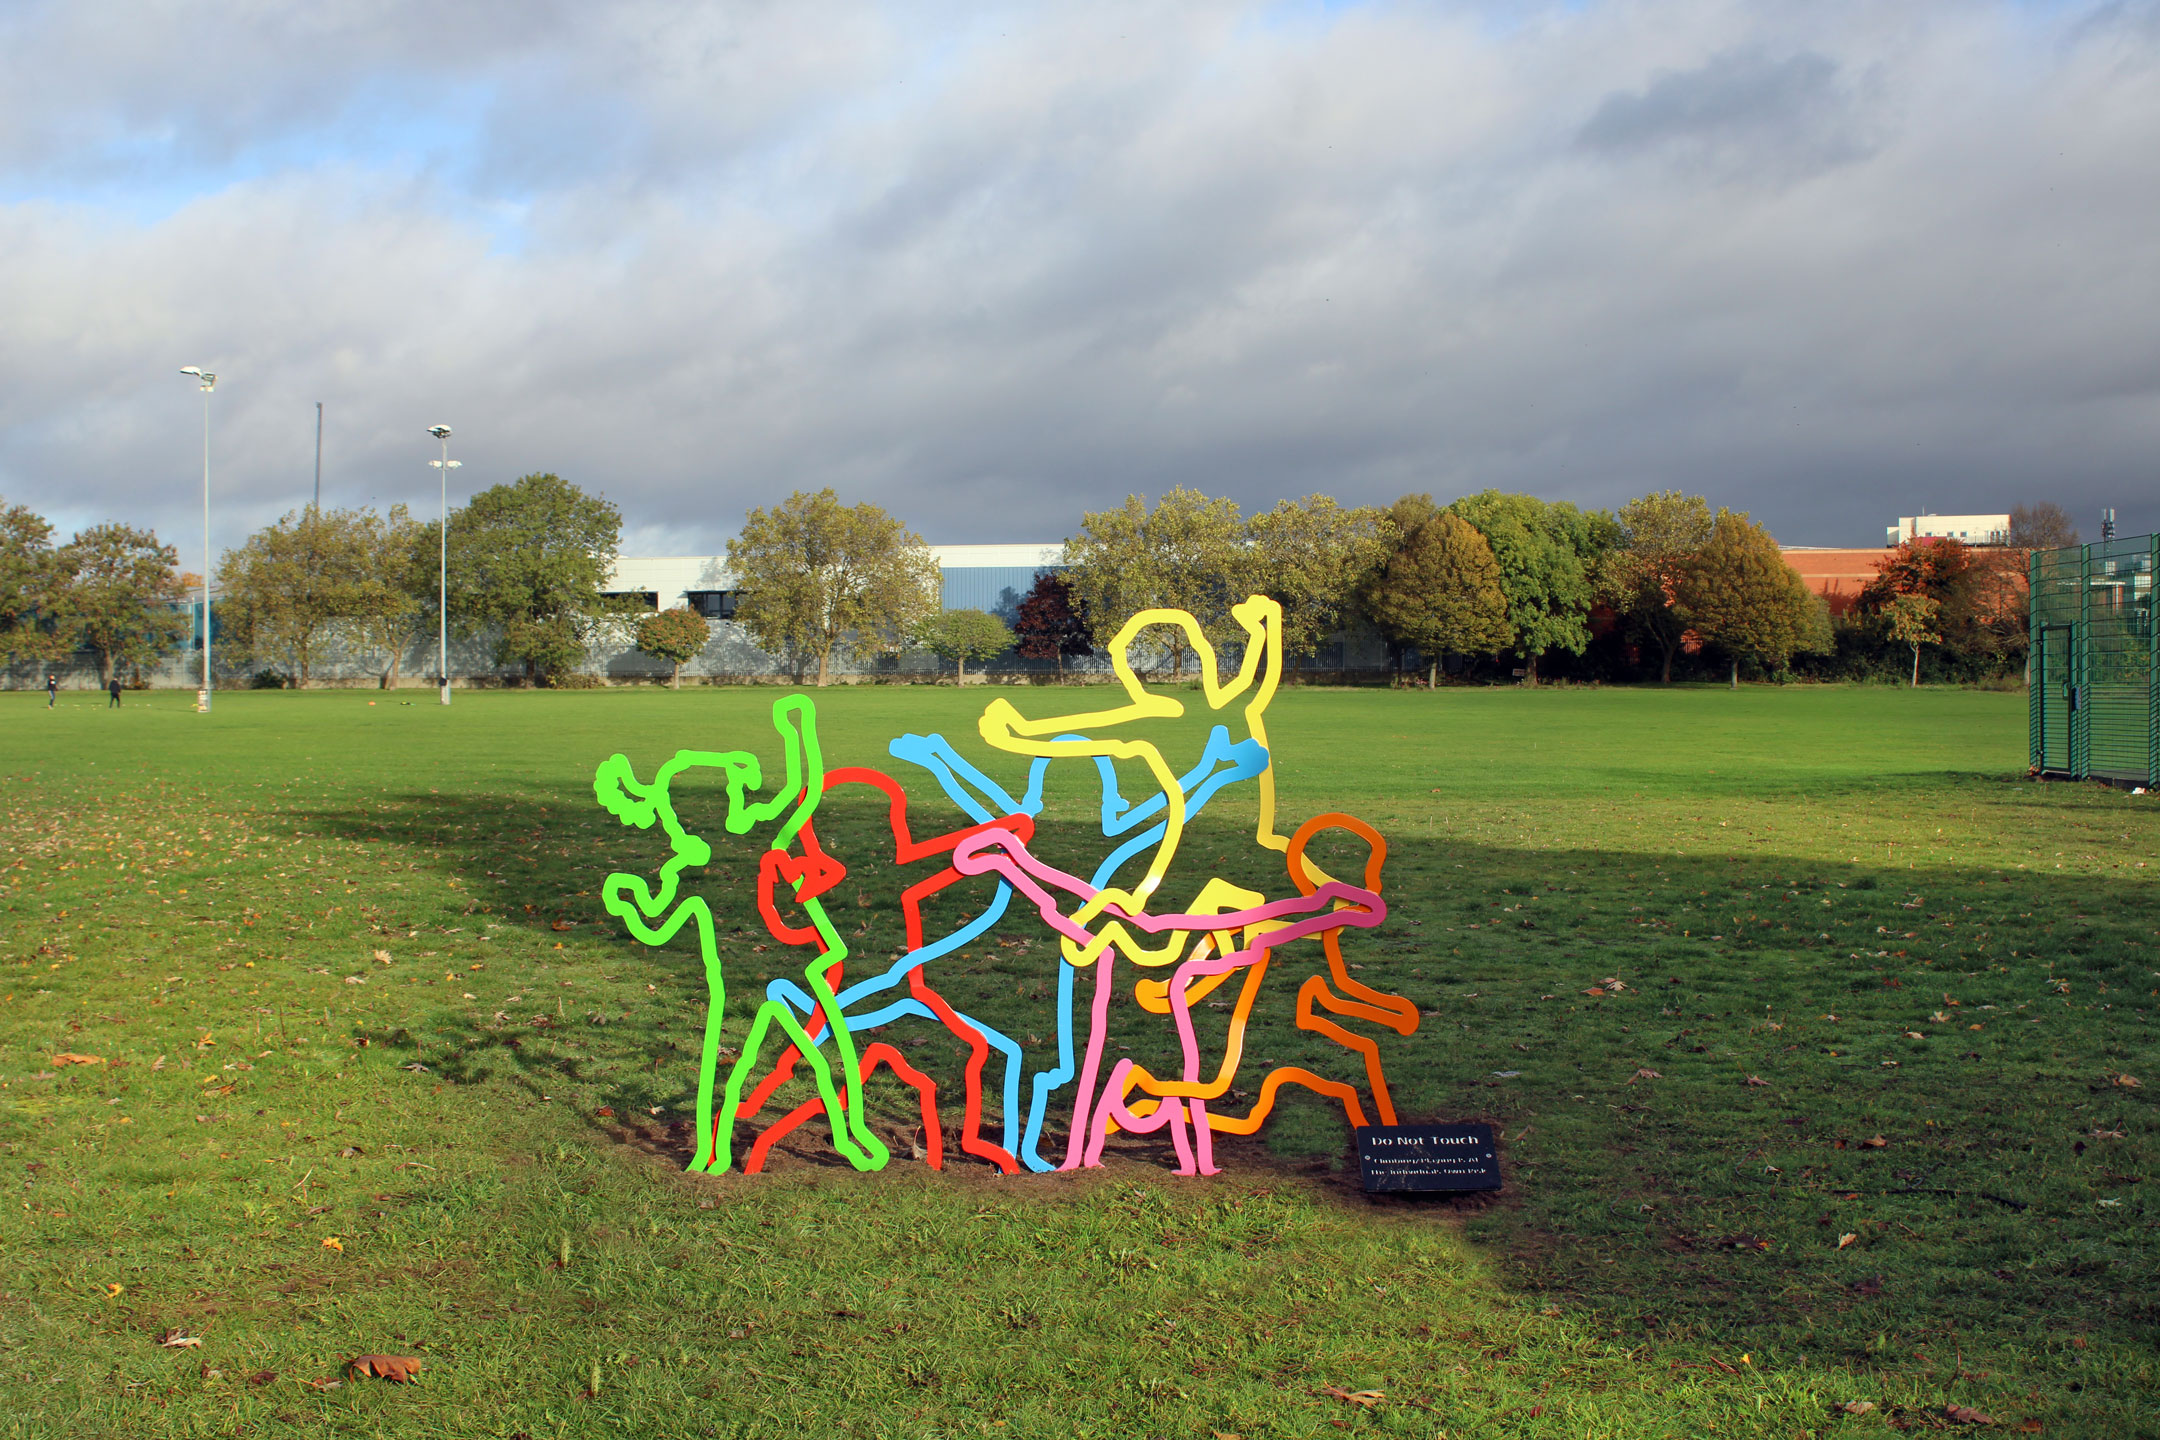 Alperton Sports Ground Public Sculpture